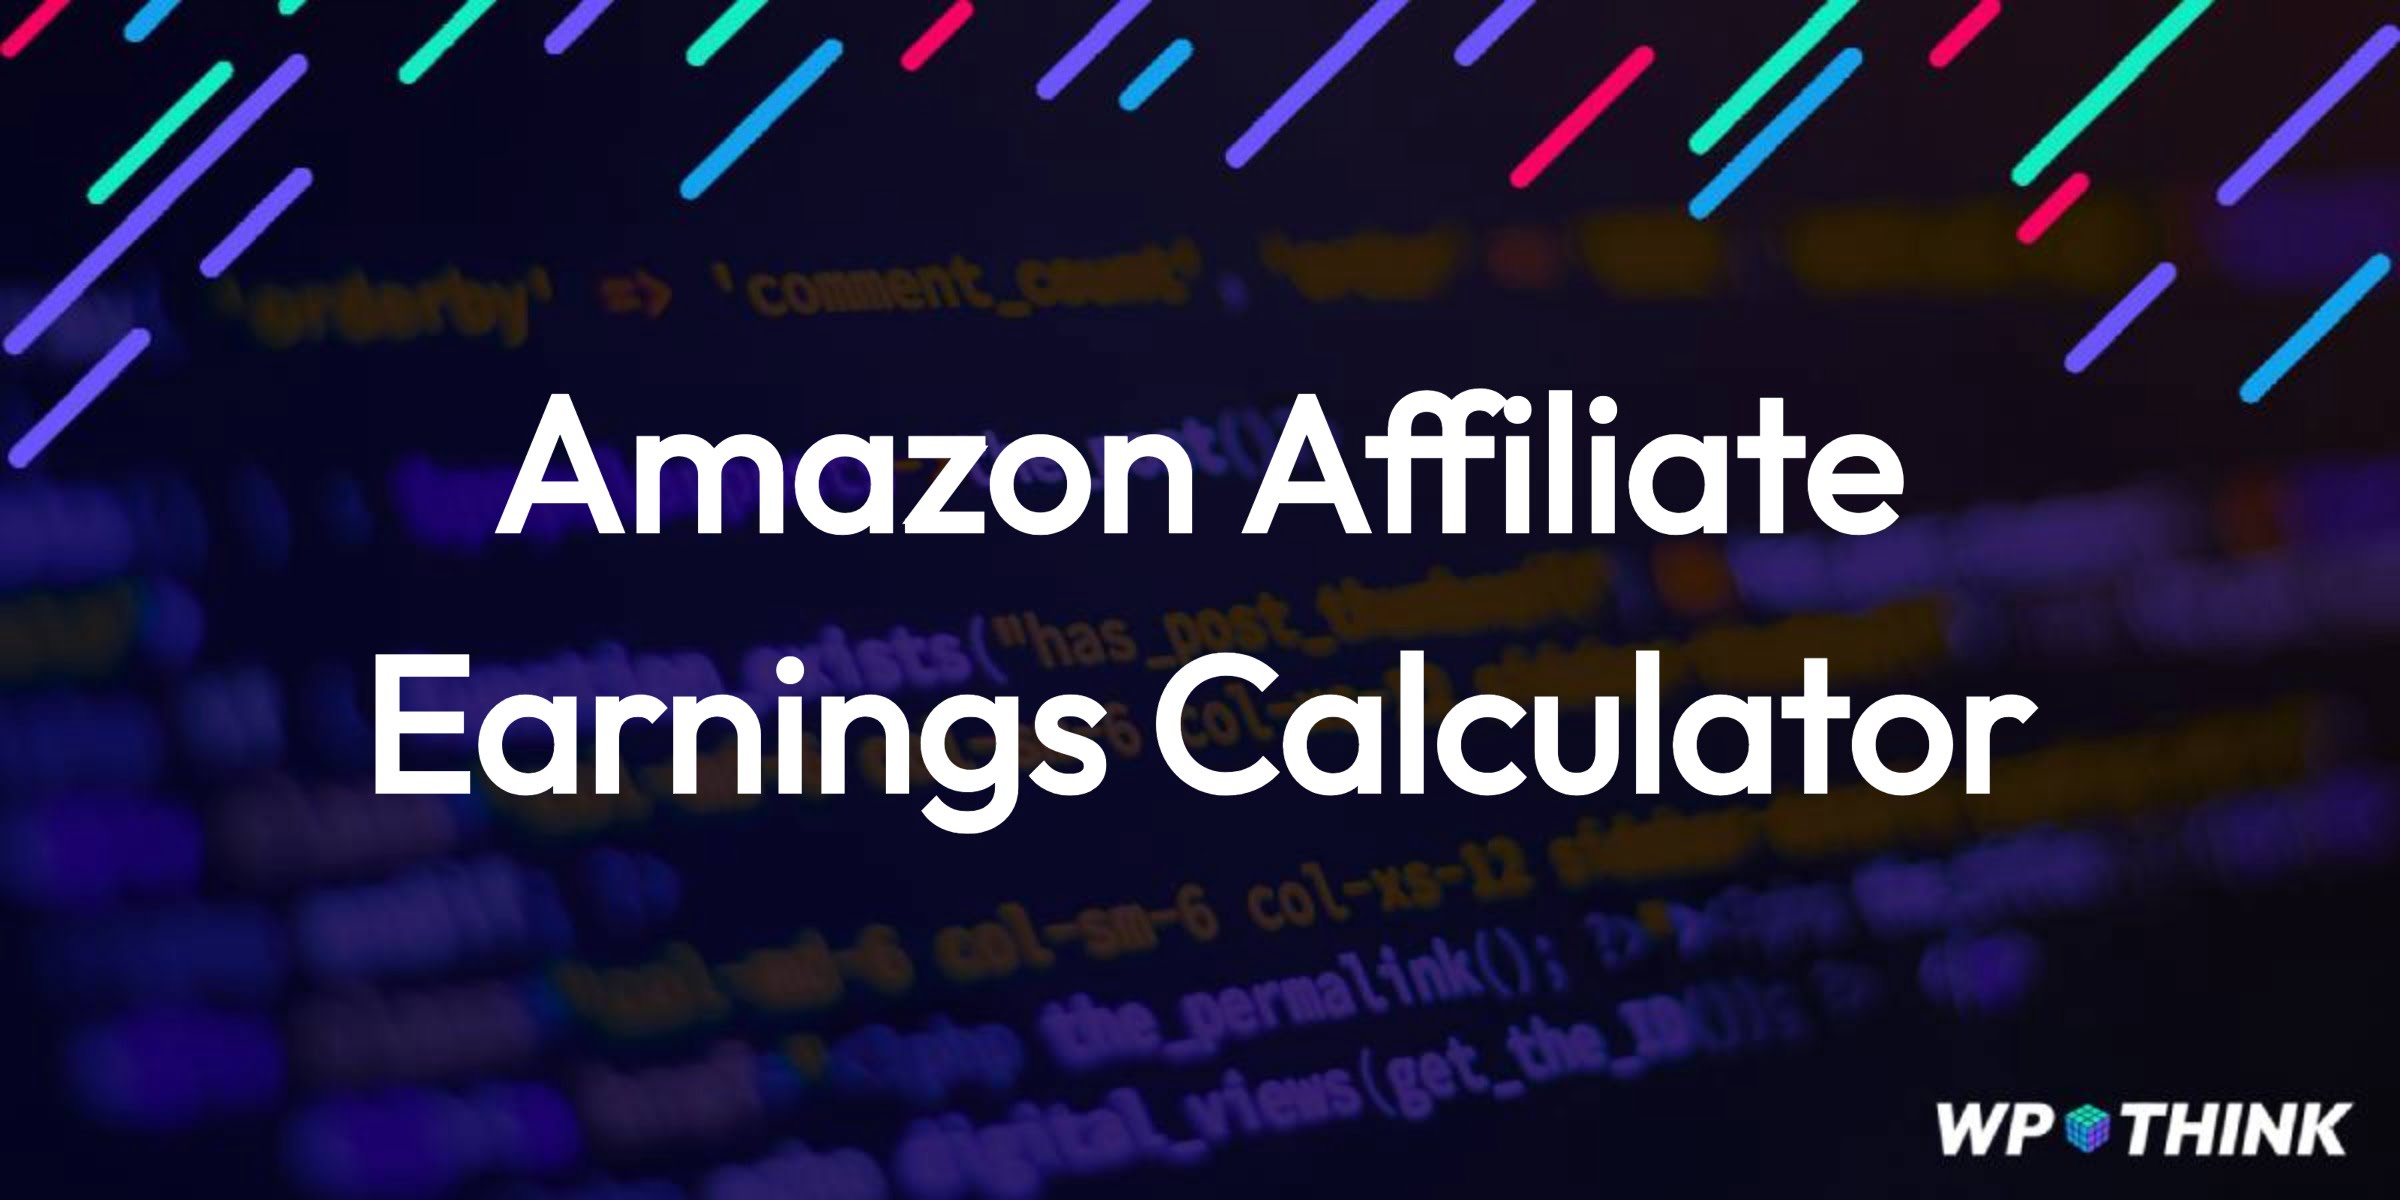 Amazon Affiliate Earnings Calculator